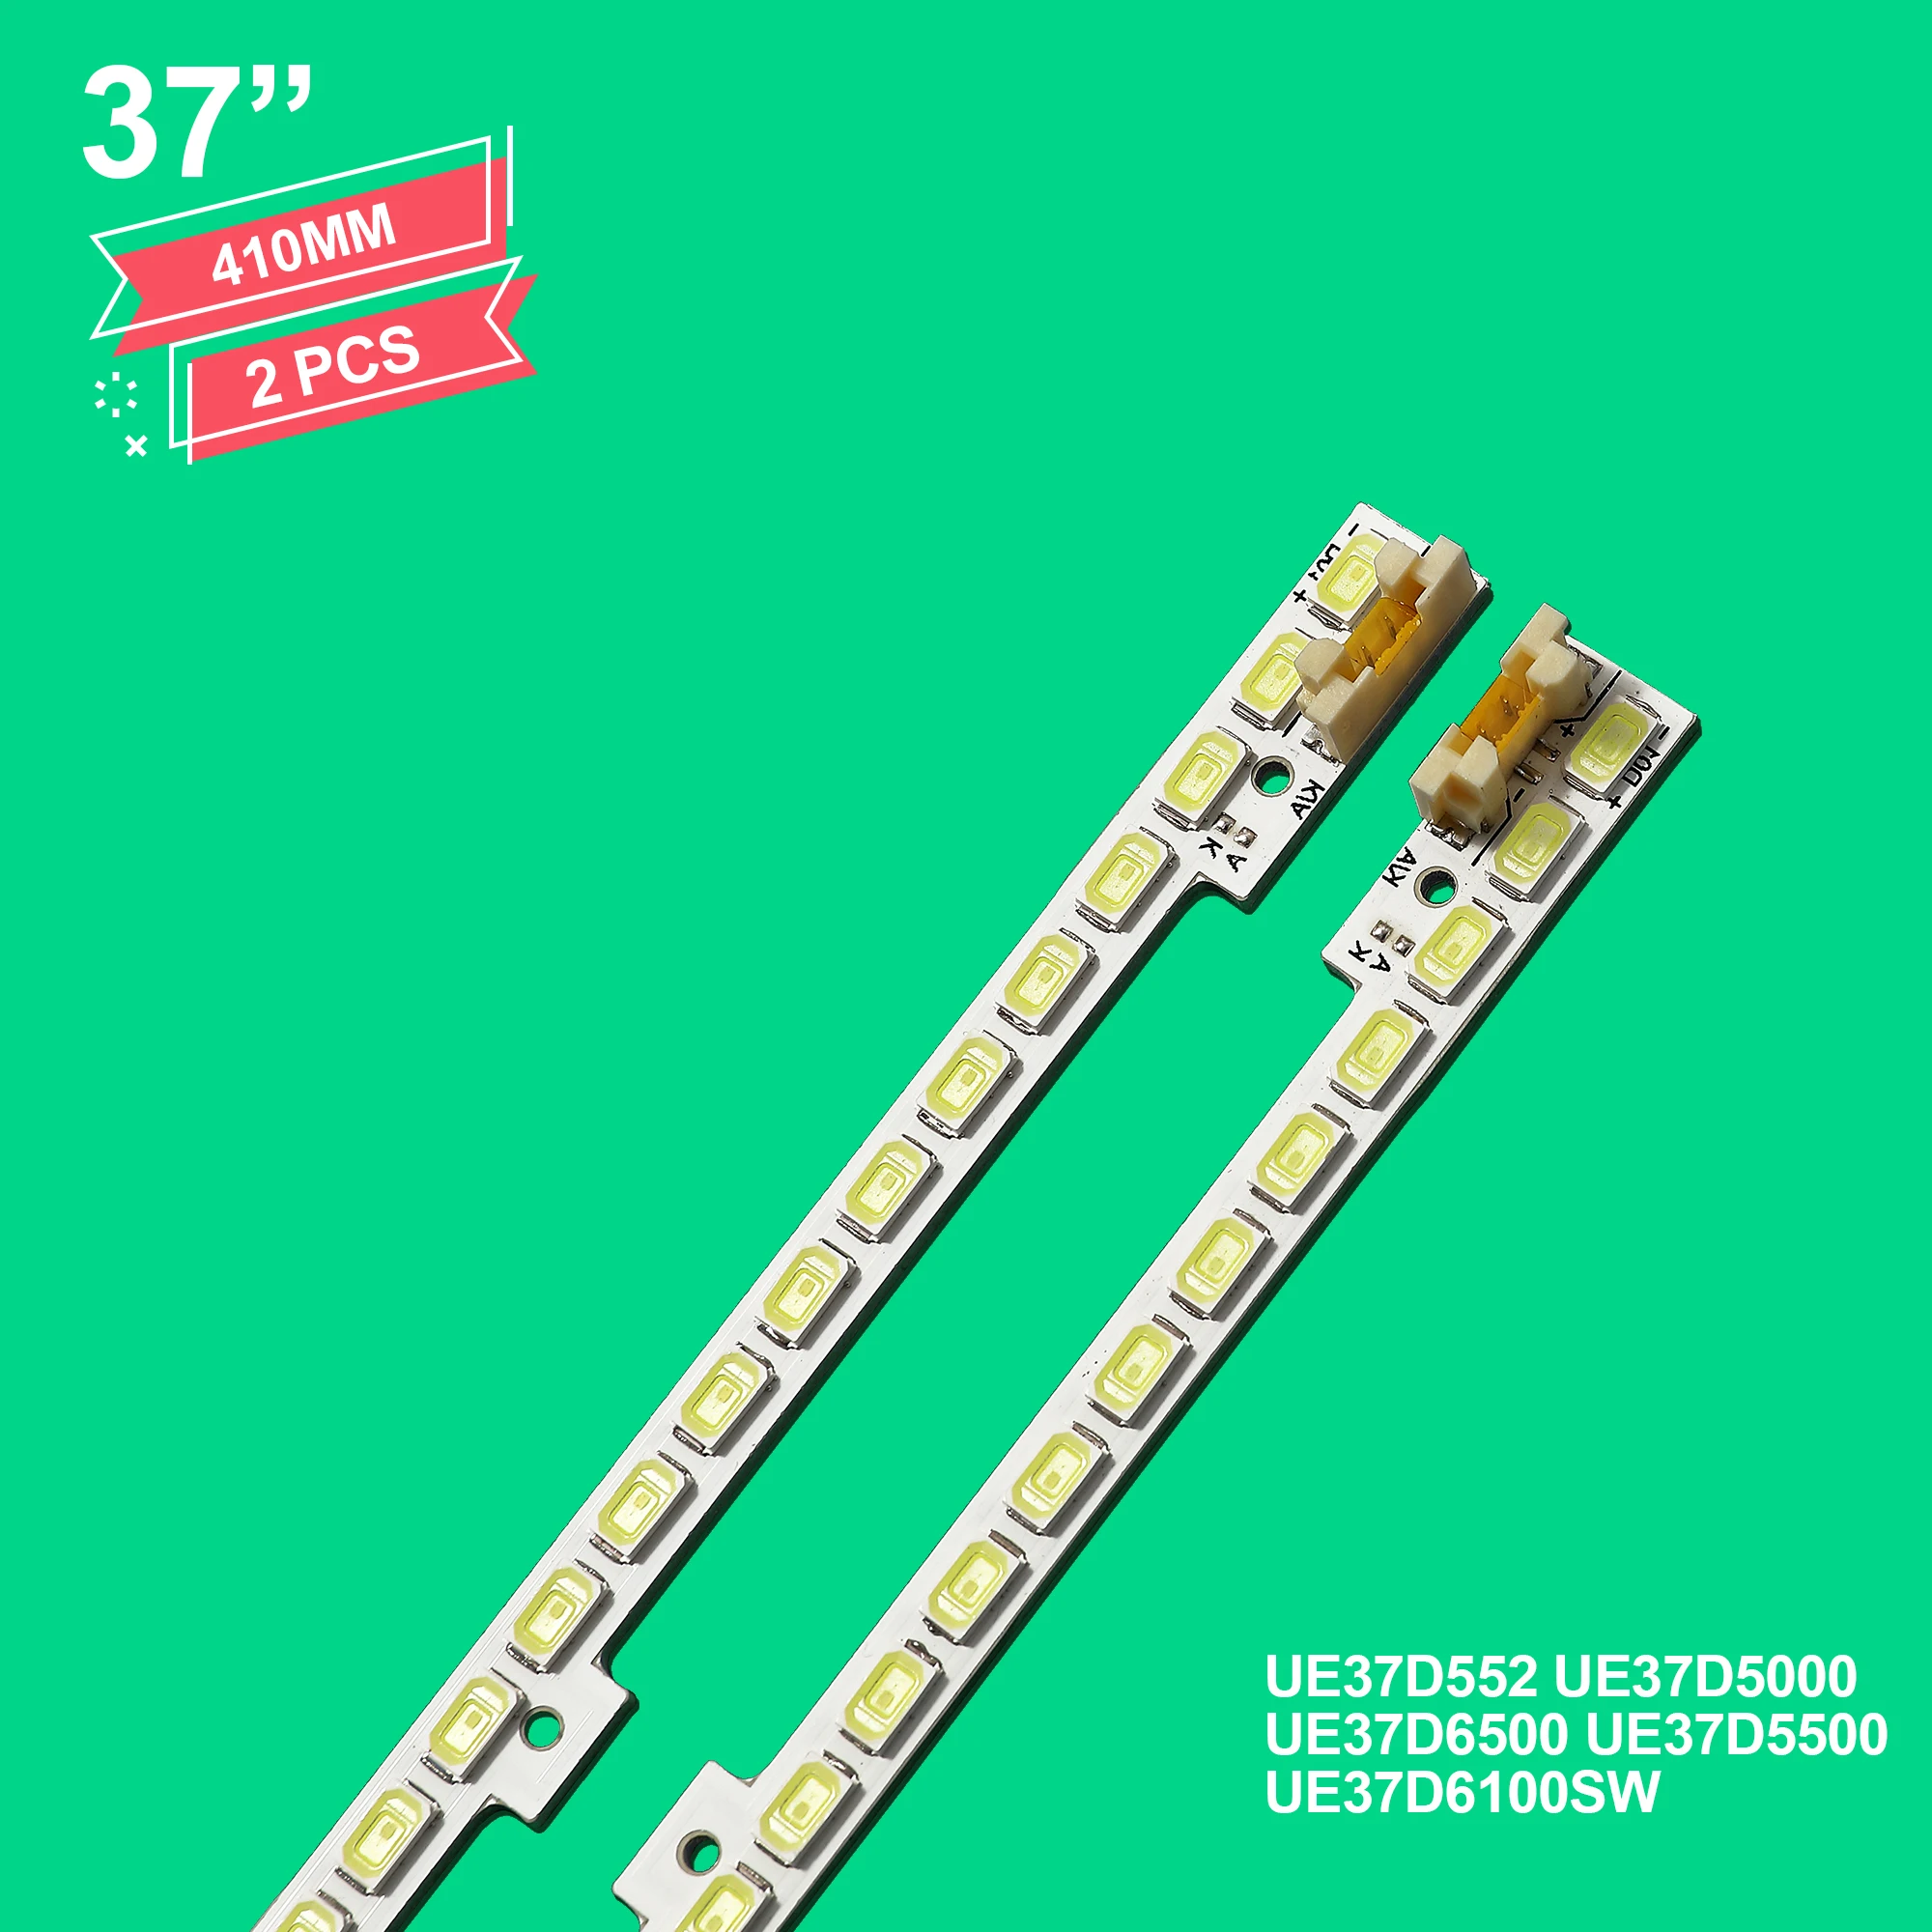 

LED Backlight strip 58 lamp For 2011SVS37 LD370CSB-C1 UE37D6500 UE37D6100SW LD370CGB-C2 LTJ320HN01-J UE32D5500 T370HW05 UE37D552